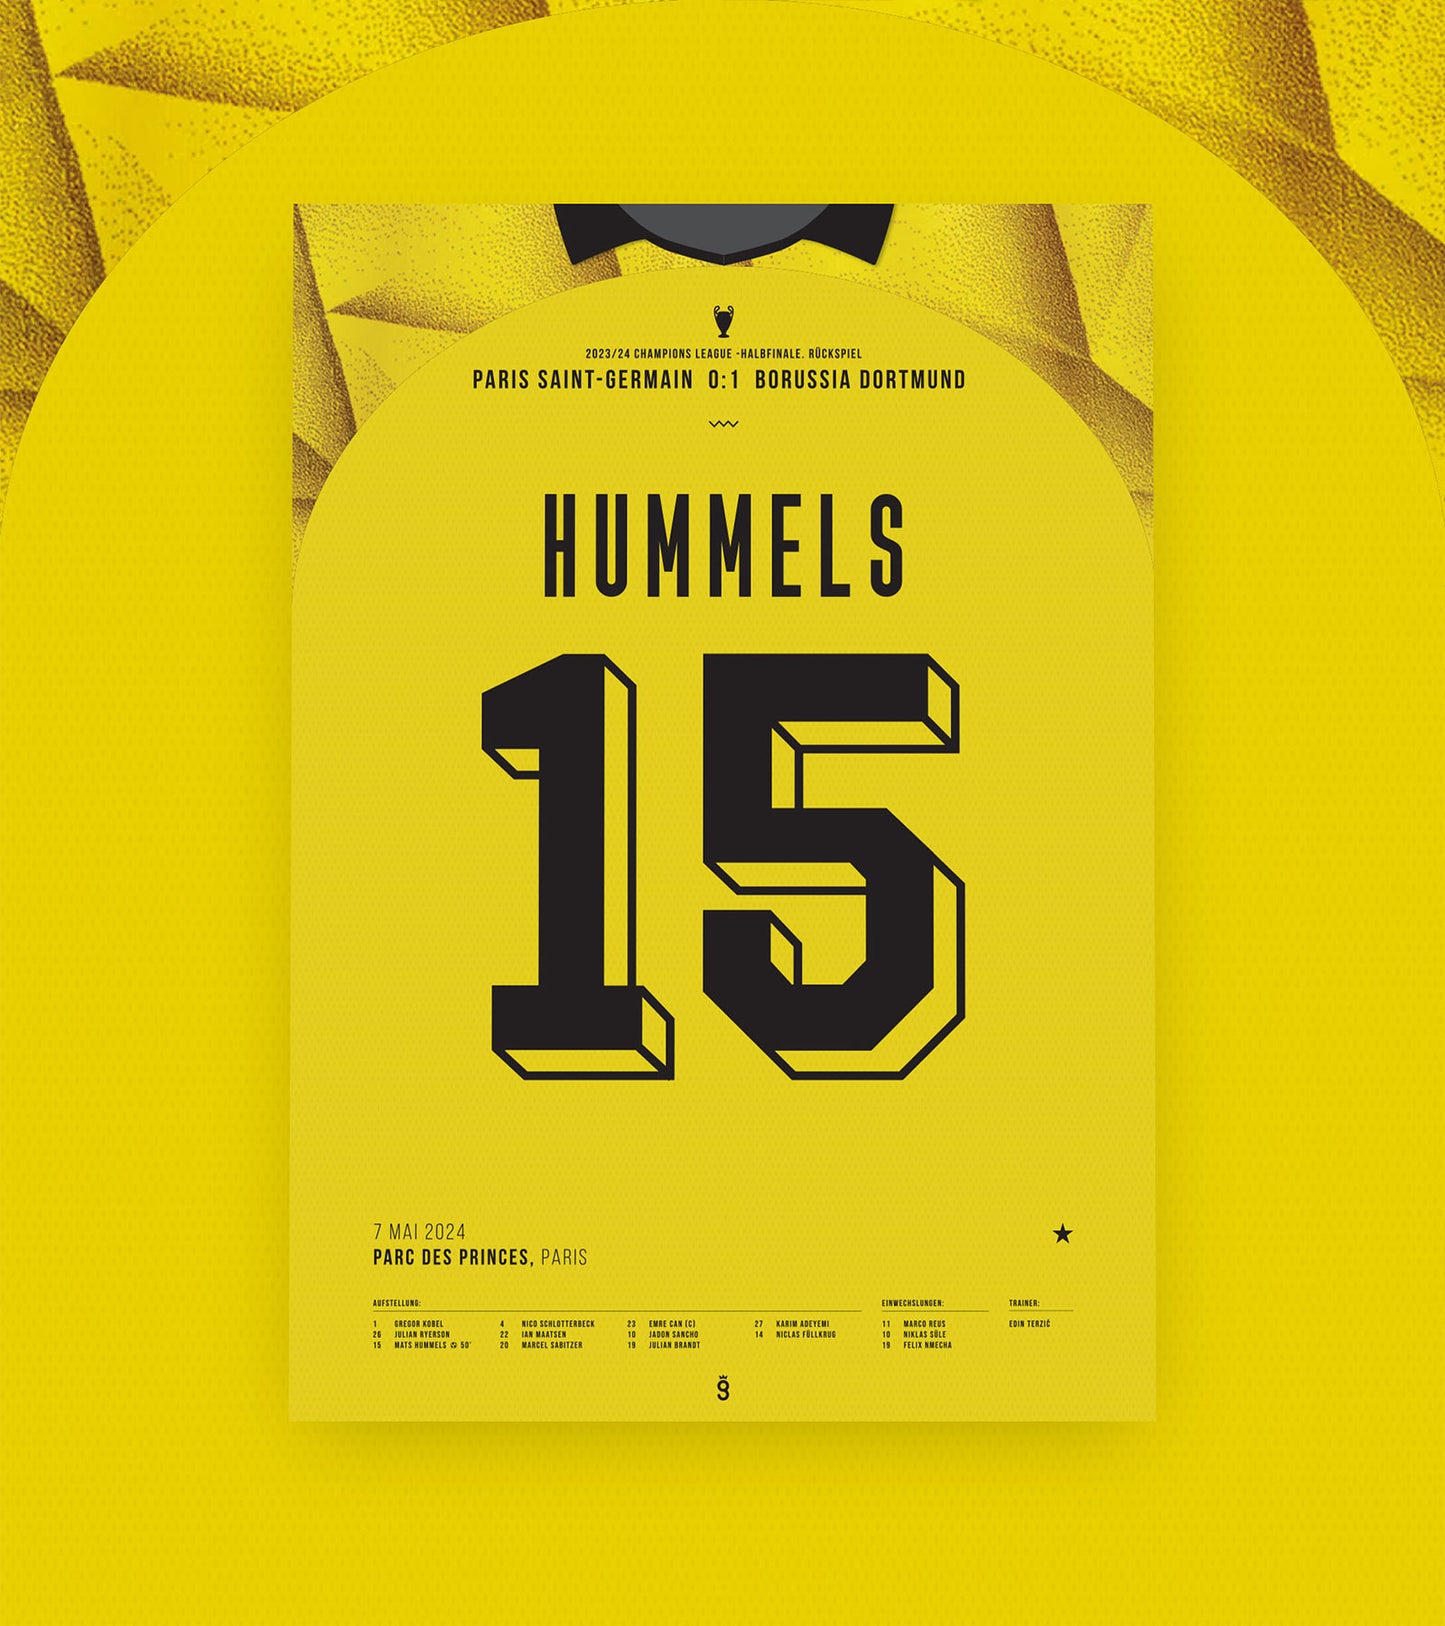 Mats Hummels winning goal vs PSG (Jersey ver.)